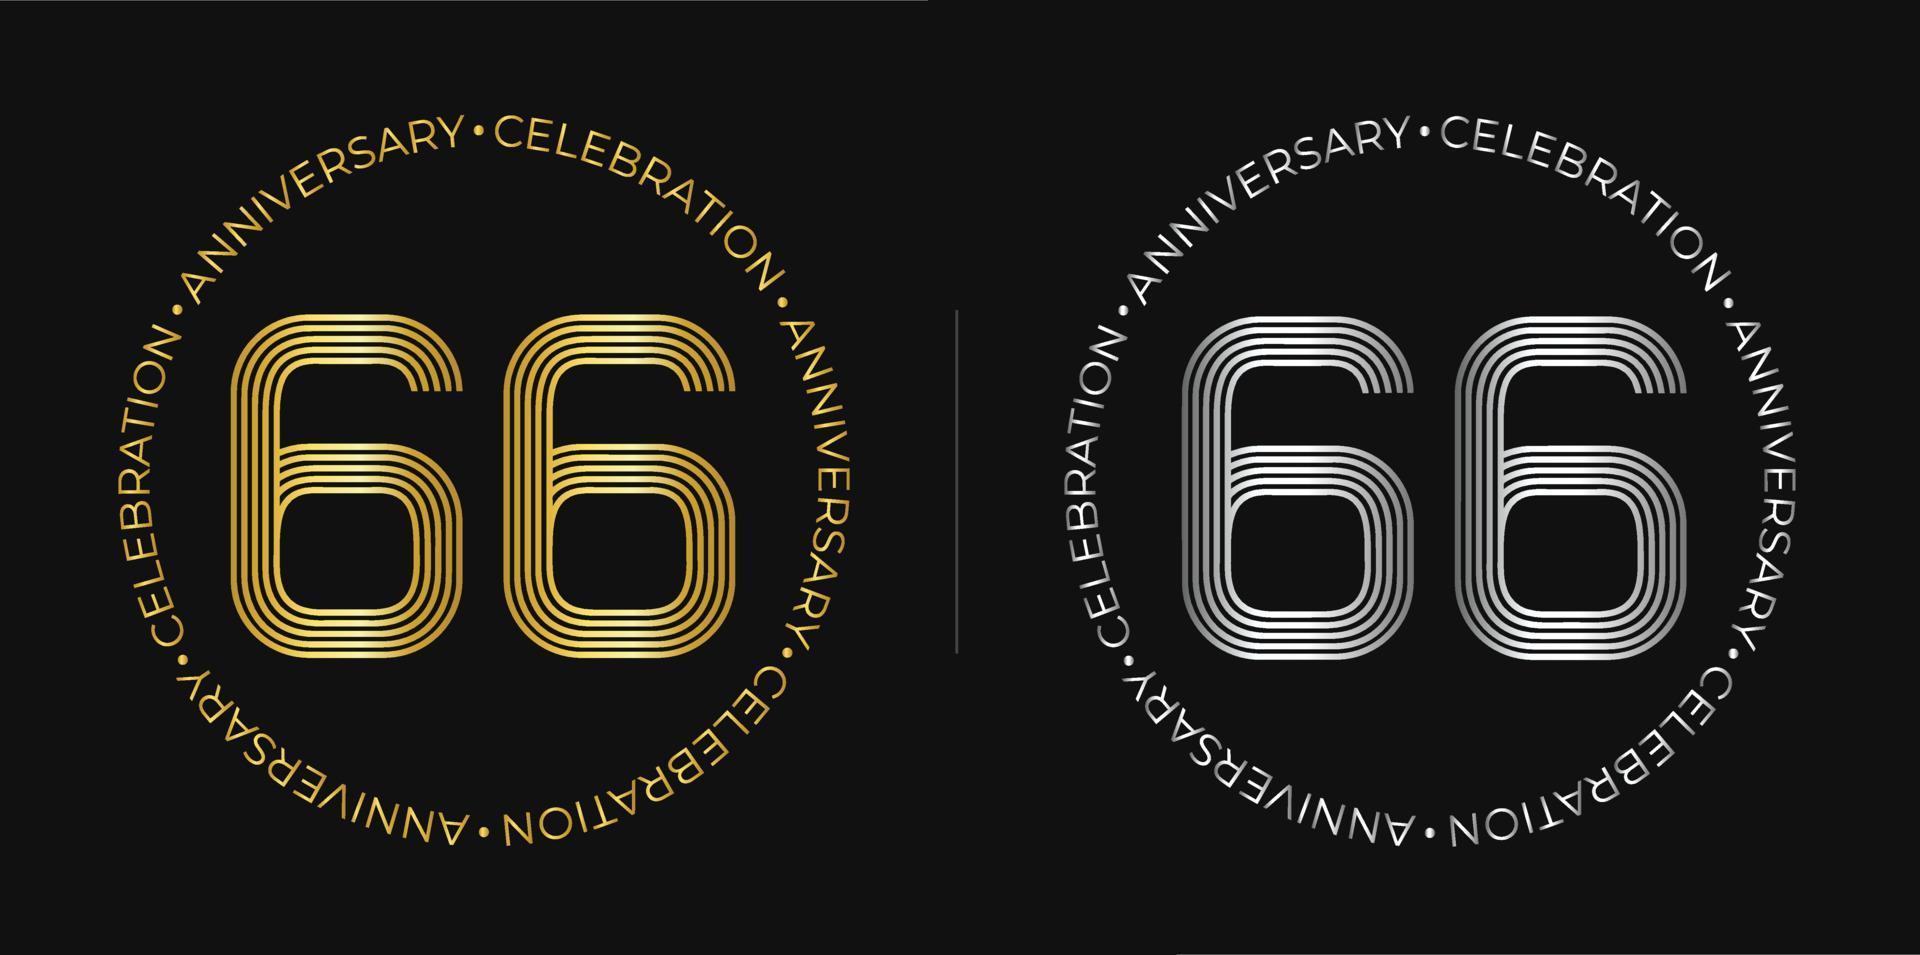 66e anniversaire. bannière de célébration d'anniversaire de soixante-six ans aux couleurs dorées et argentées. logo circulaire avec un design original de chiffres aux lignes élégantes. vecteur